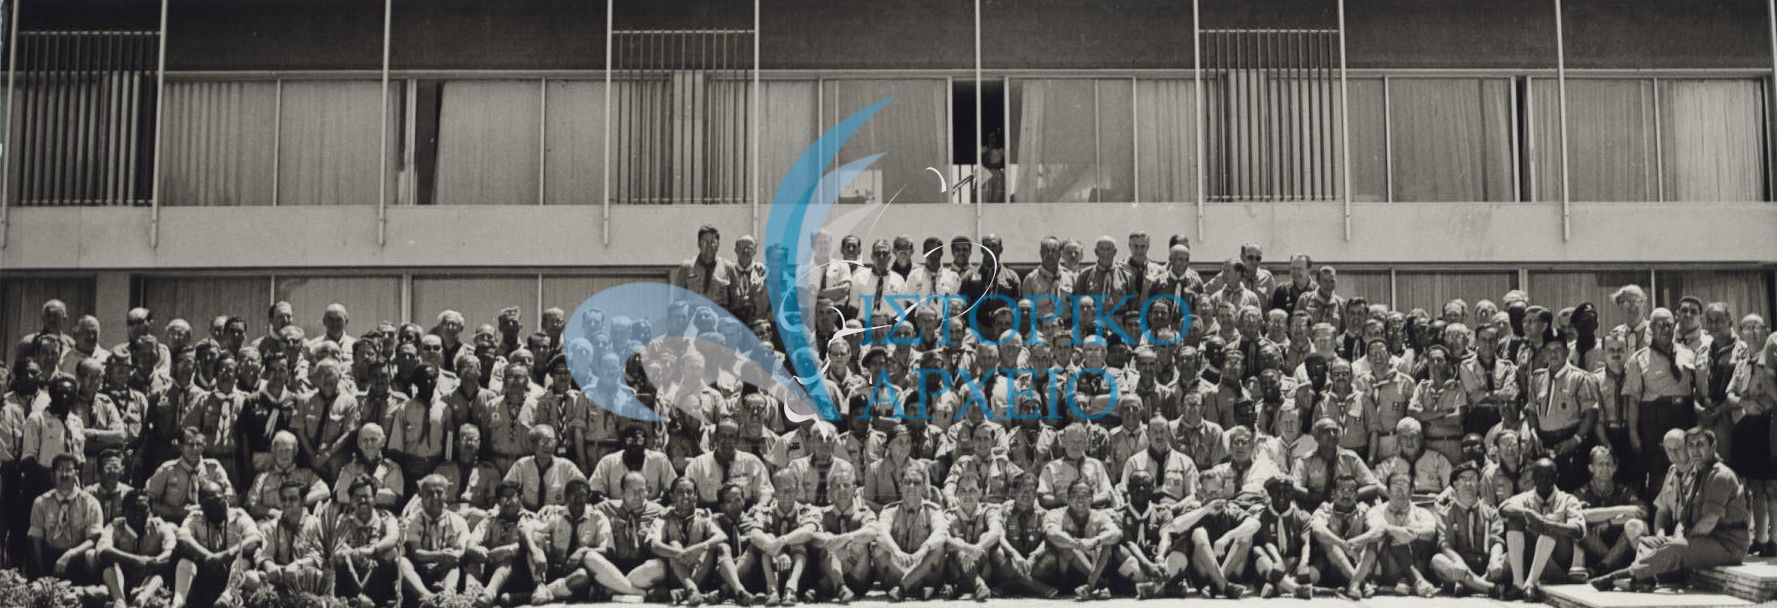 Βαθμοφόροι από όλον τον κόσμο που συμμετείχαν στο Παγκόσμιο Προσκοπικό Συνέδριο στη Ρόδο το 1963.